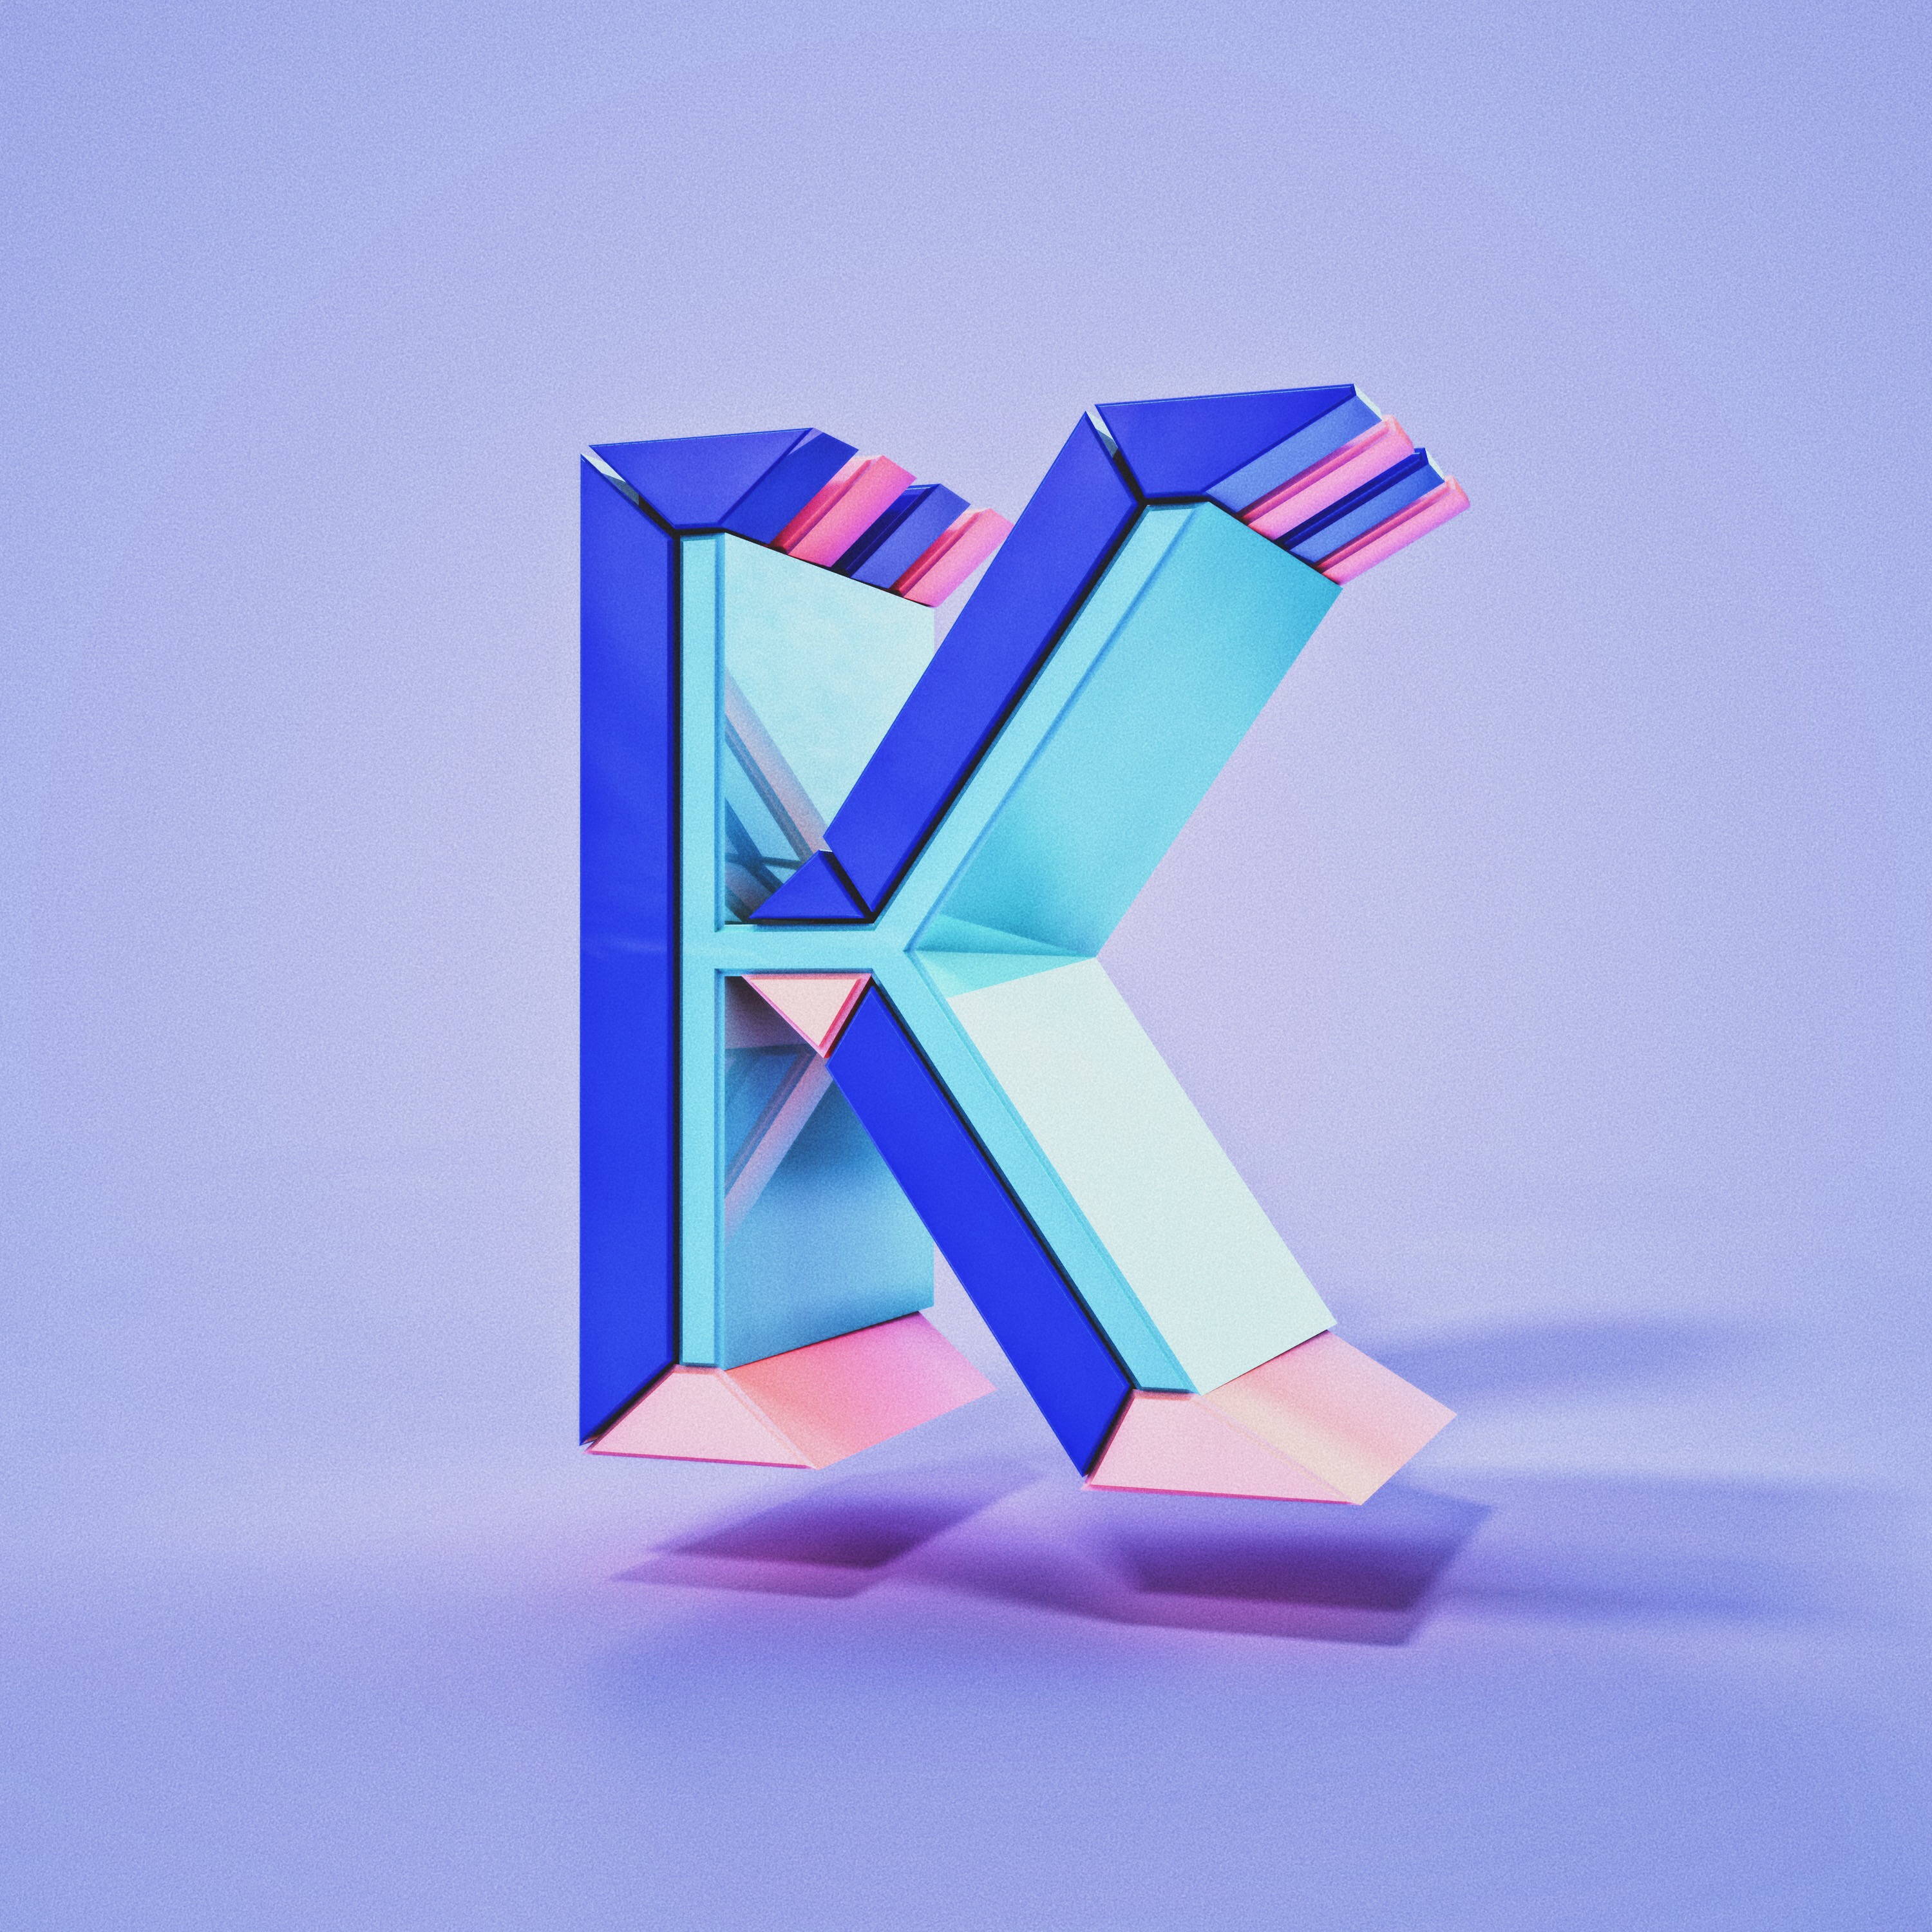 K 3 new. 3д буквы. 3d буквы. 3d буква k. Красивые 3d буквы.